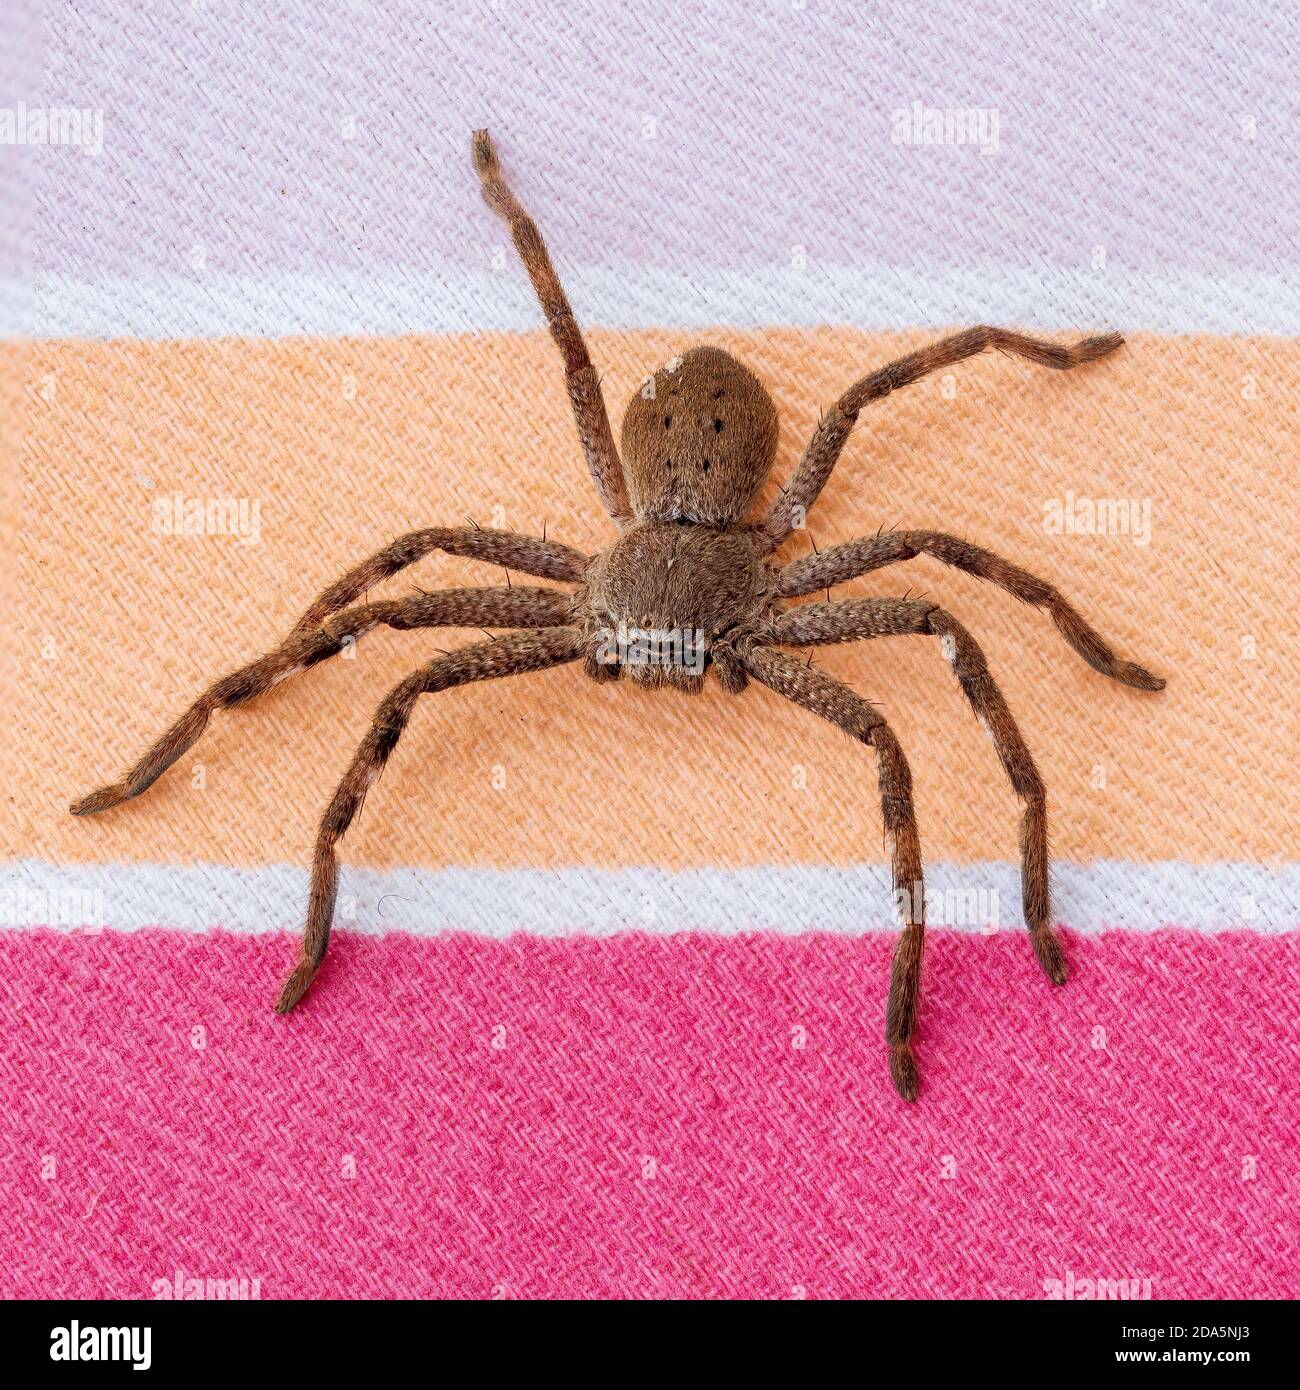 Eine große braune Arachnid allgemein bekannt als Huntsman Spider mit einem wissenschaftlichen Namen von Holconia montana. Stockfoto